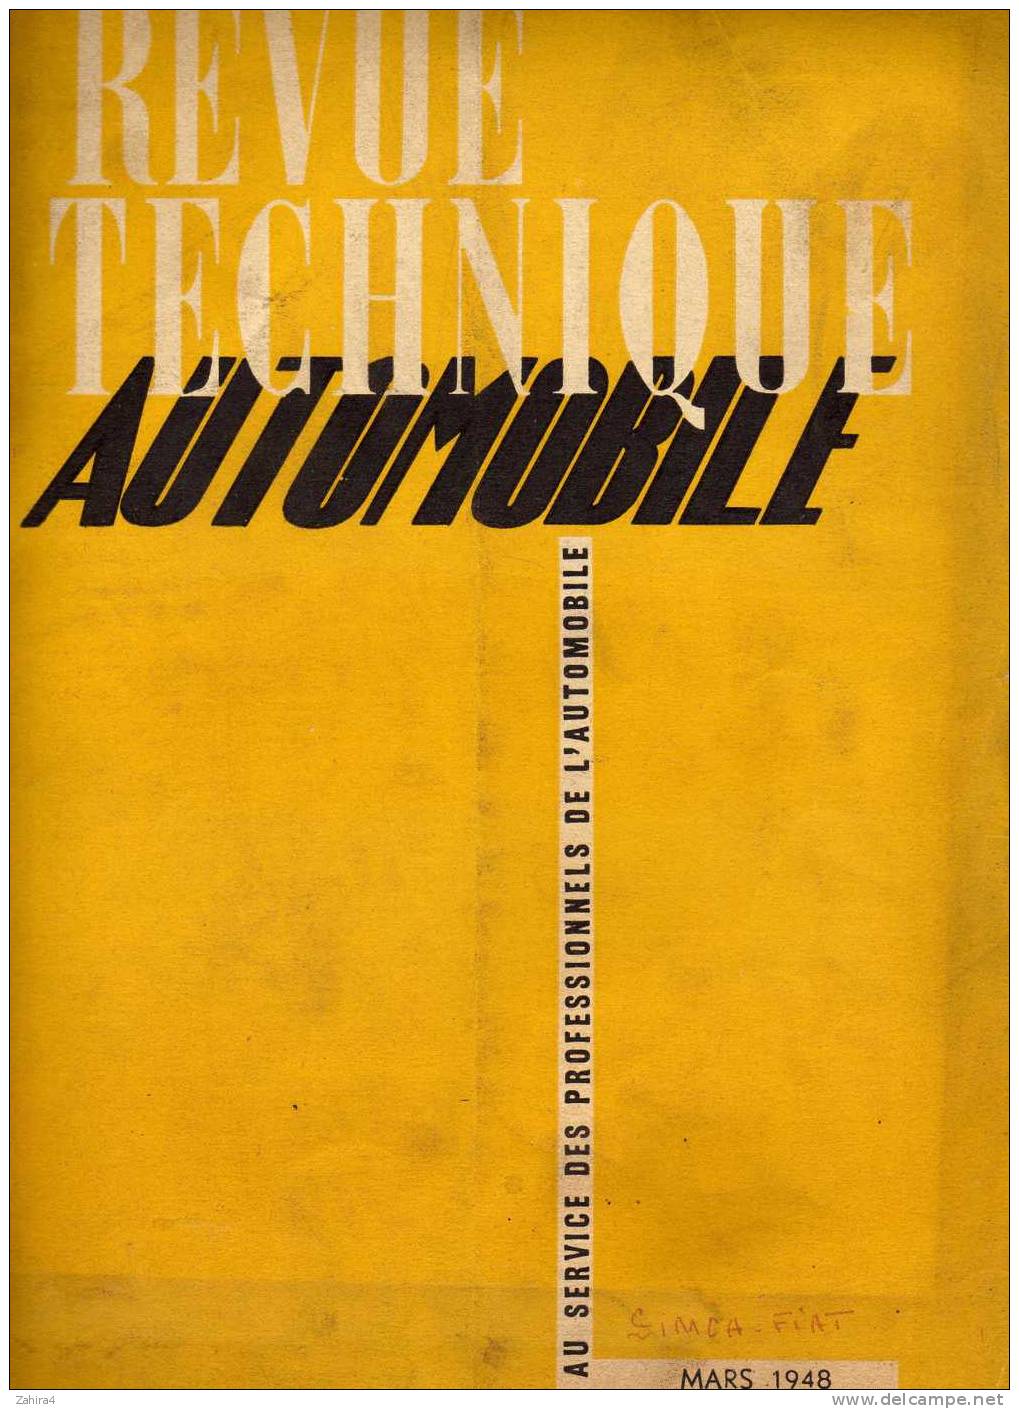 Revue Technique Automobile  -  SIMCA-FIAT 6 CV  -  3em Année  N° 23  - Moteur Diesel Cummins -belles PUB - Auto